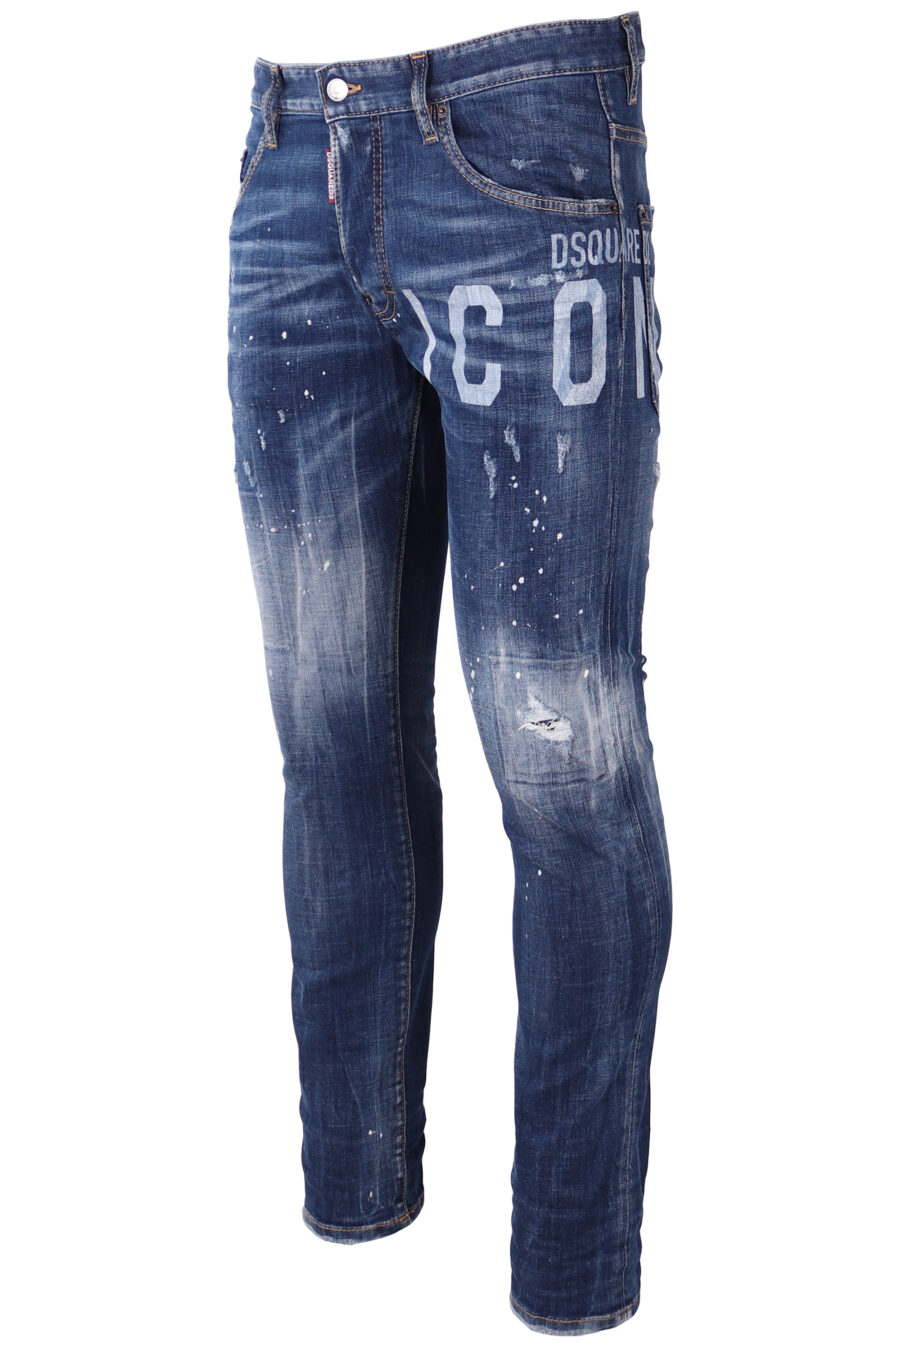 Pantalón vaquero "Skater" azul desgastado con logo "icon" blanco - IMG 1748